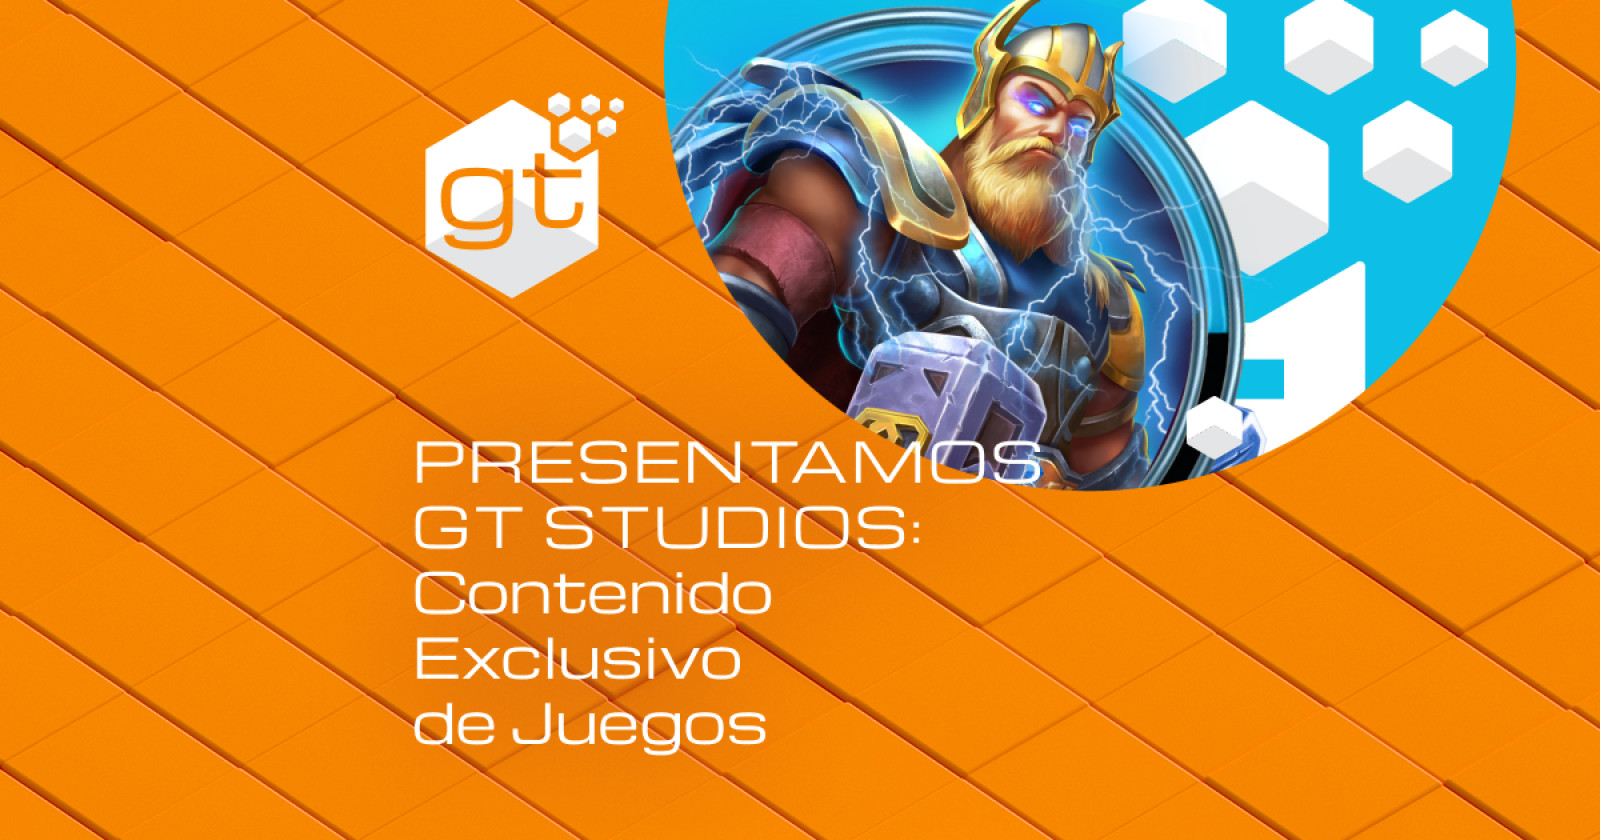 Presentamos GT Studios: Contenido Exclusivo de Juegos